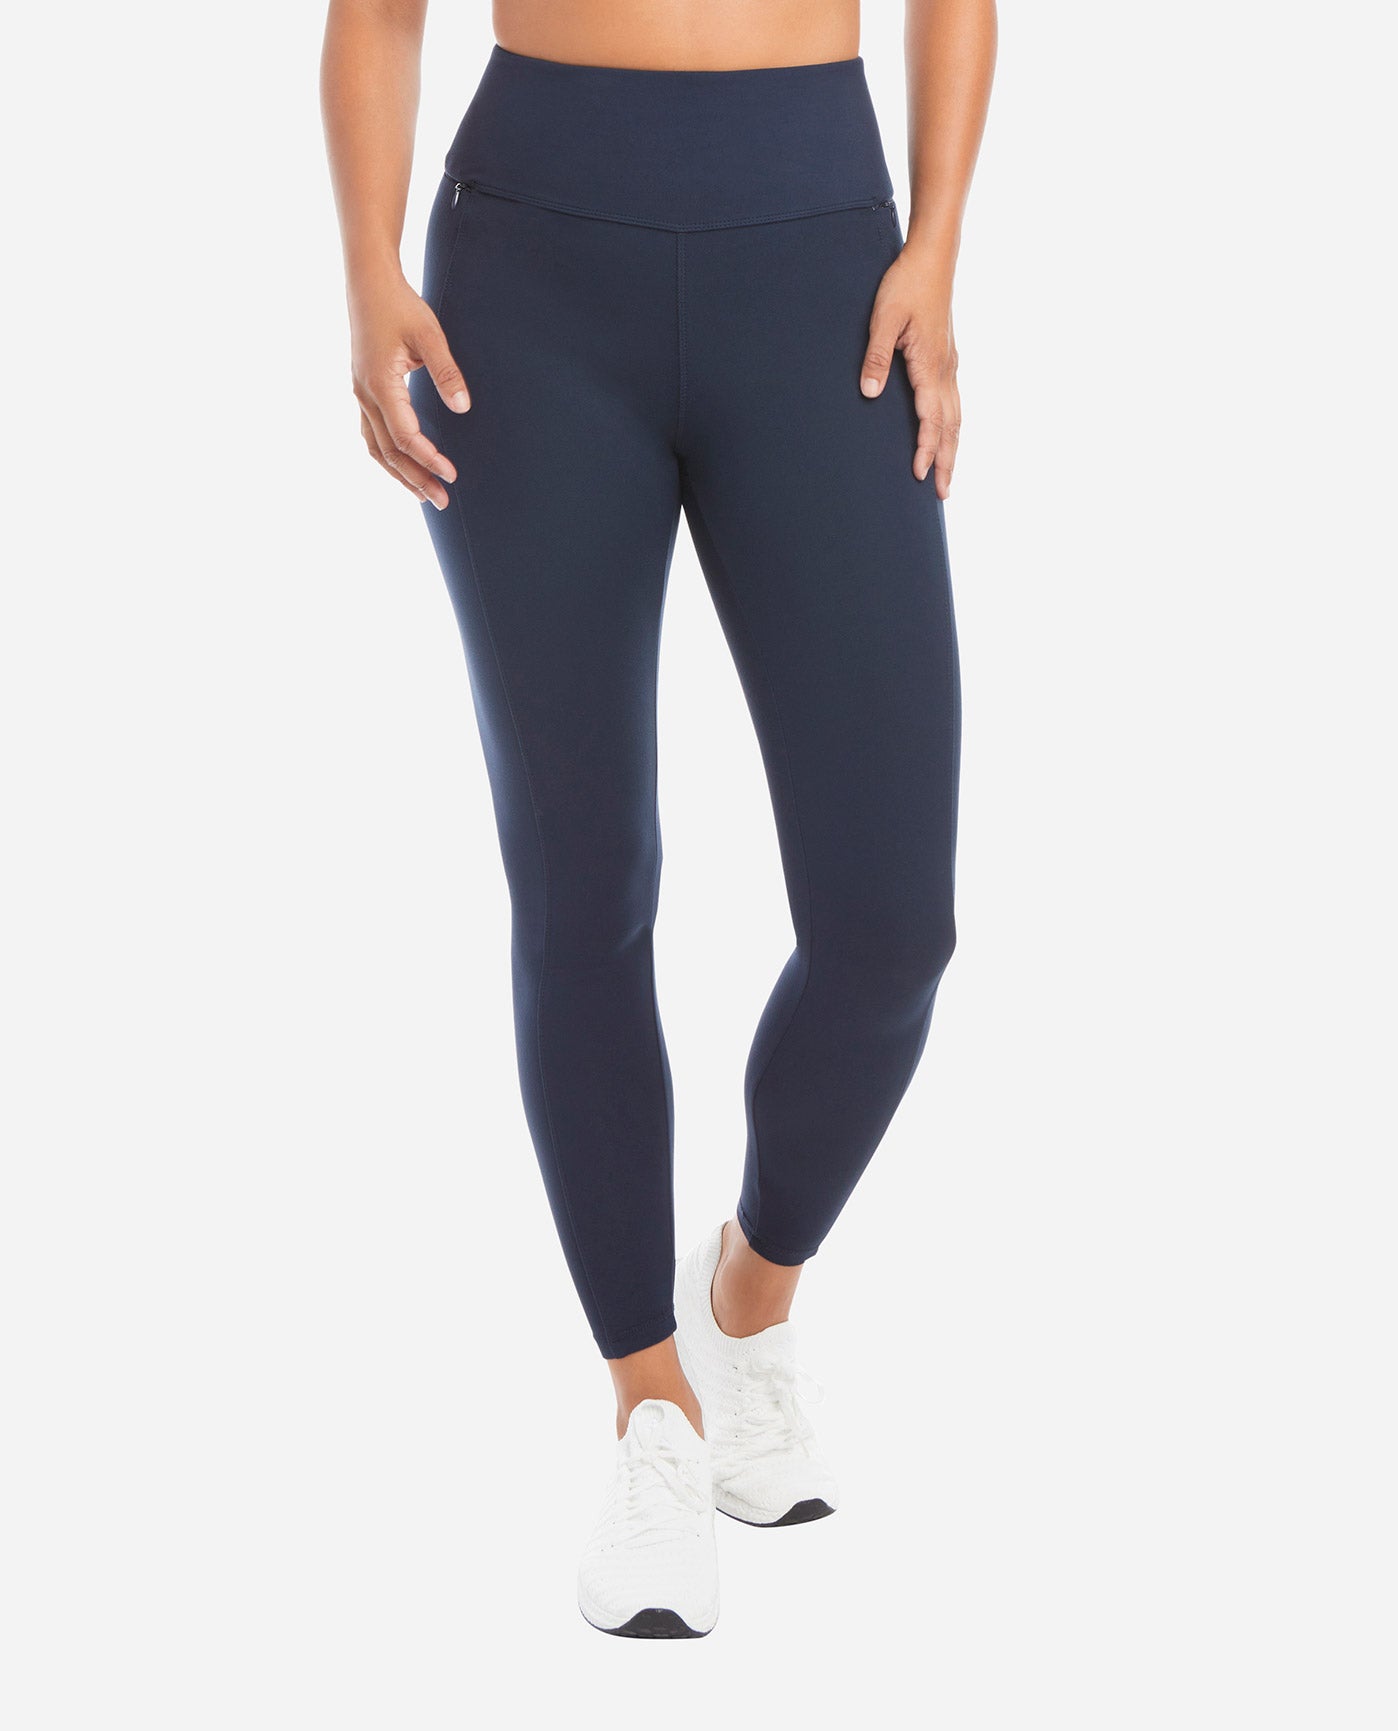 Women’s side pocket leggings - Sz S - 7/8 length